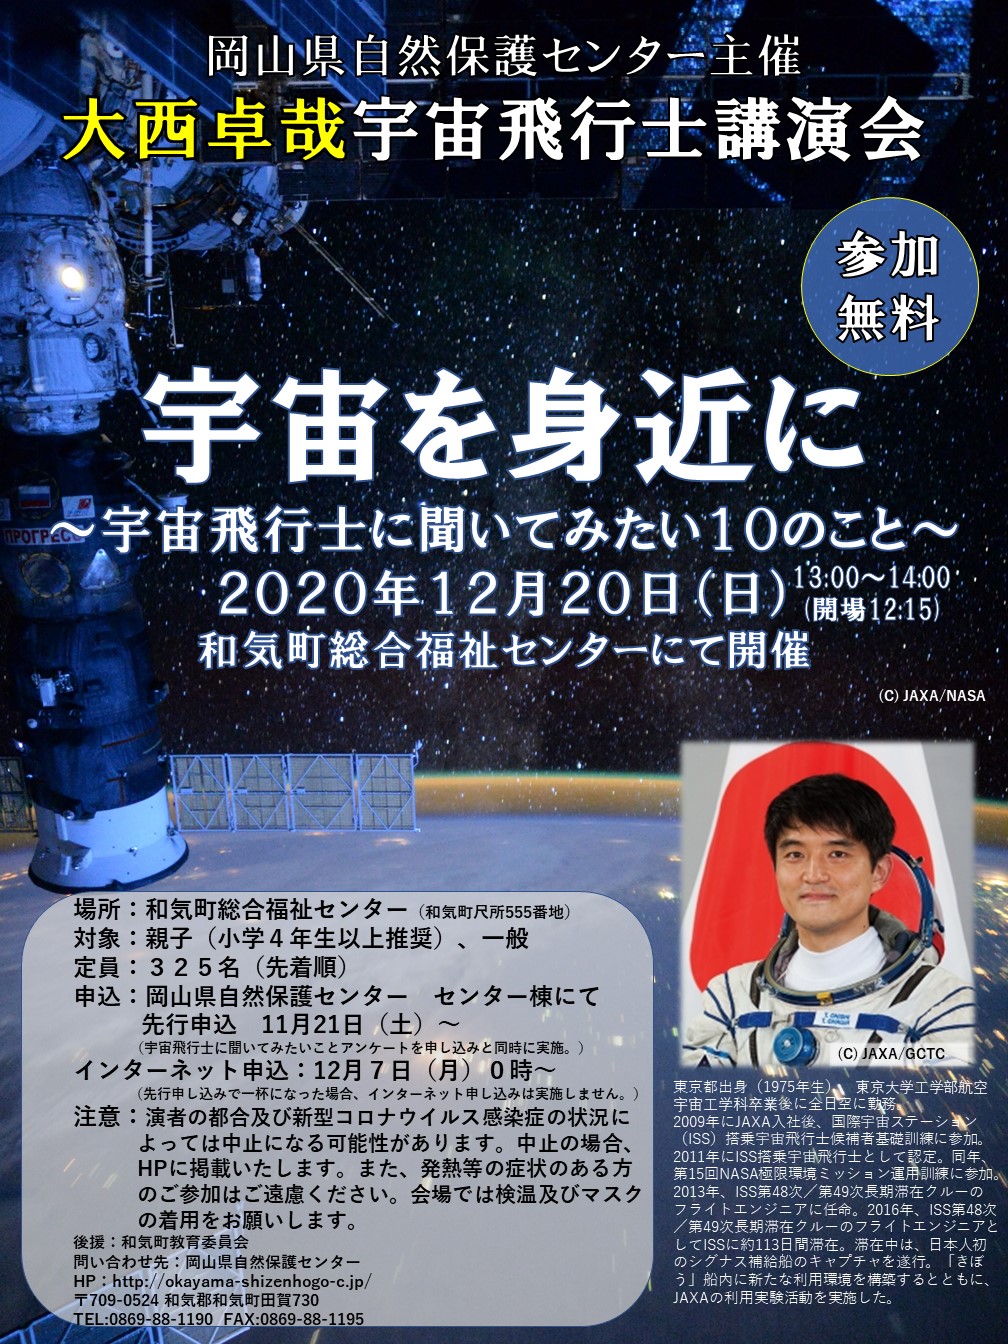 【延期】宇宙飛行士講演会（12月20日開催）について